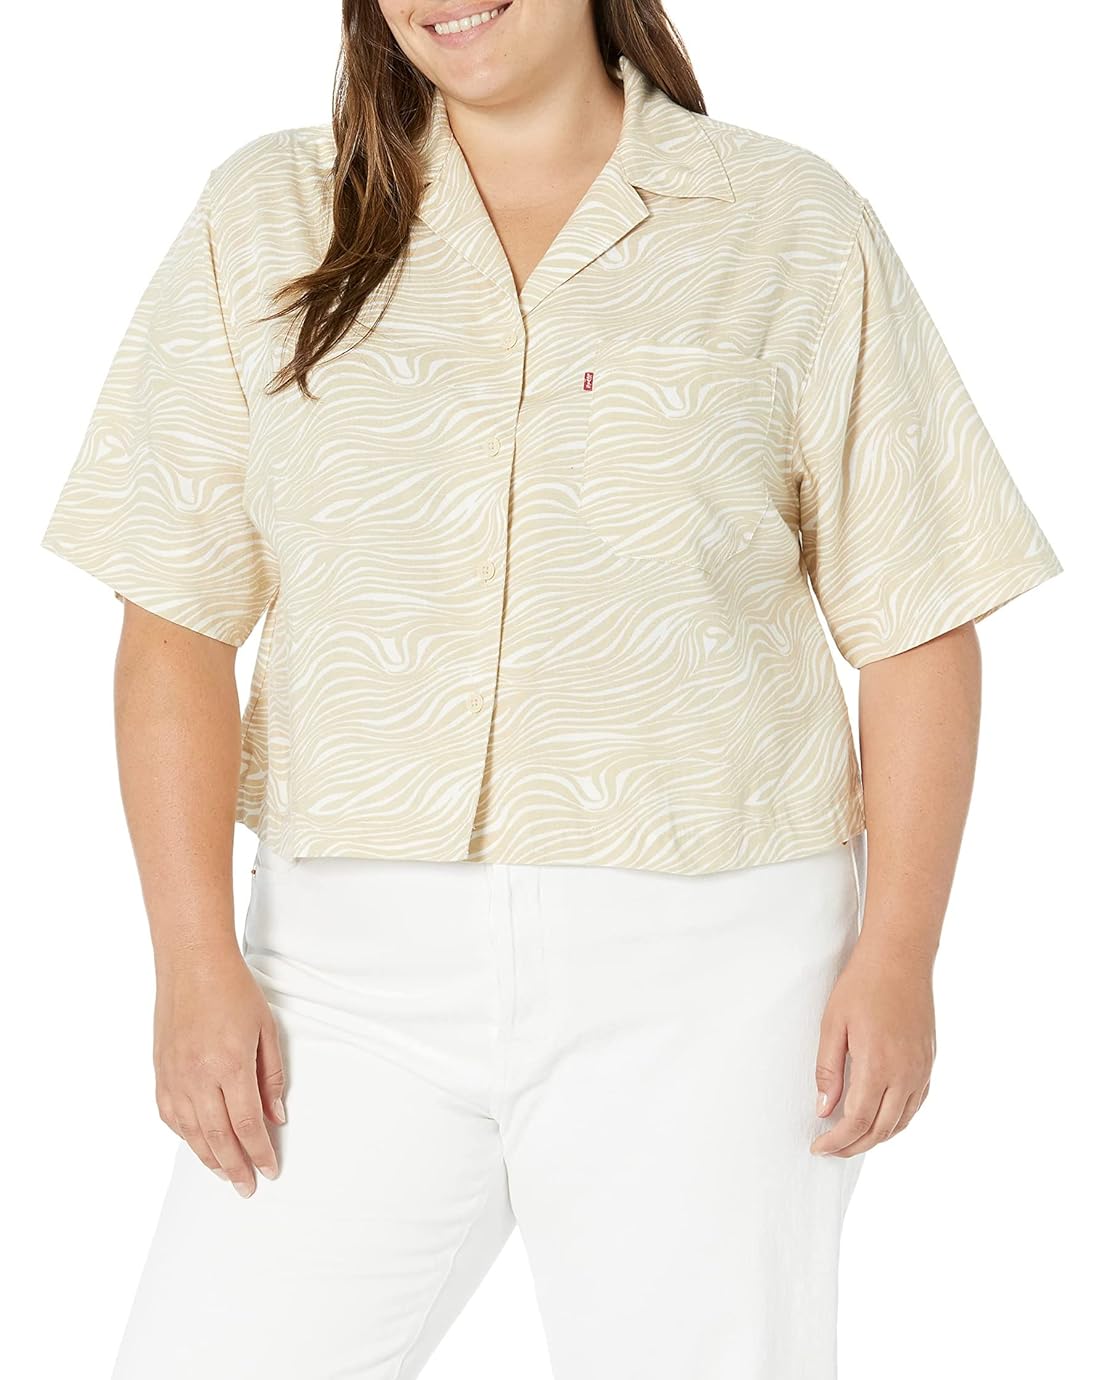 Levis Womens Short Sleeve Resort Shirt